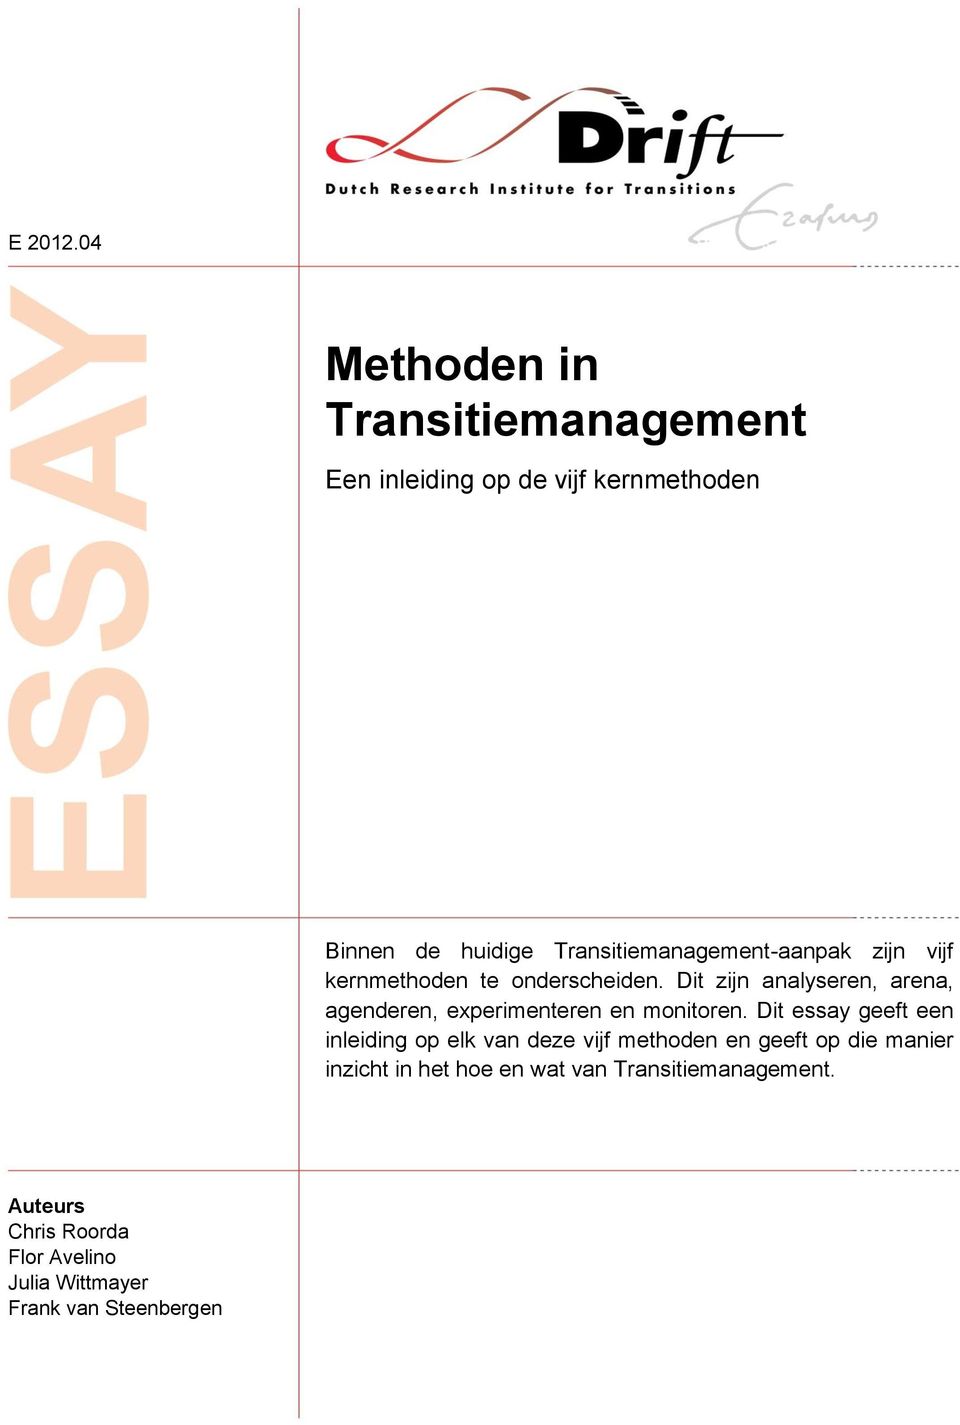 Transitiemanagement-aanpak zijn vijf kernmethoden te onderscheiden.